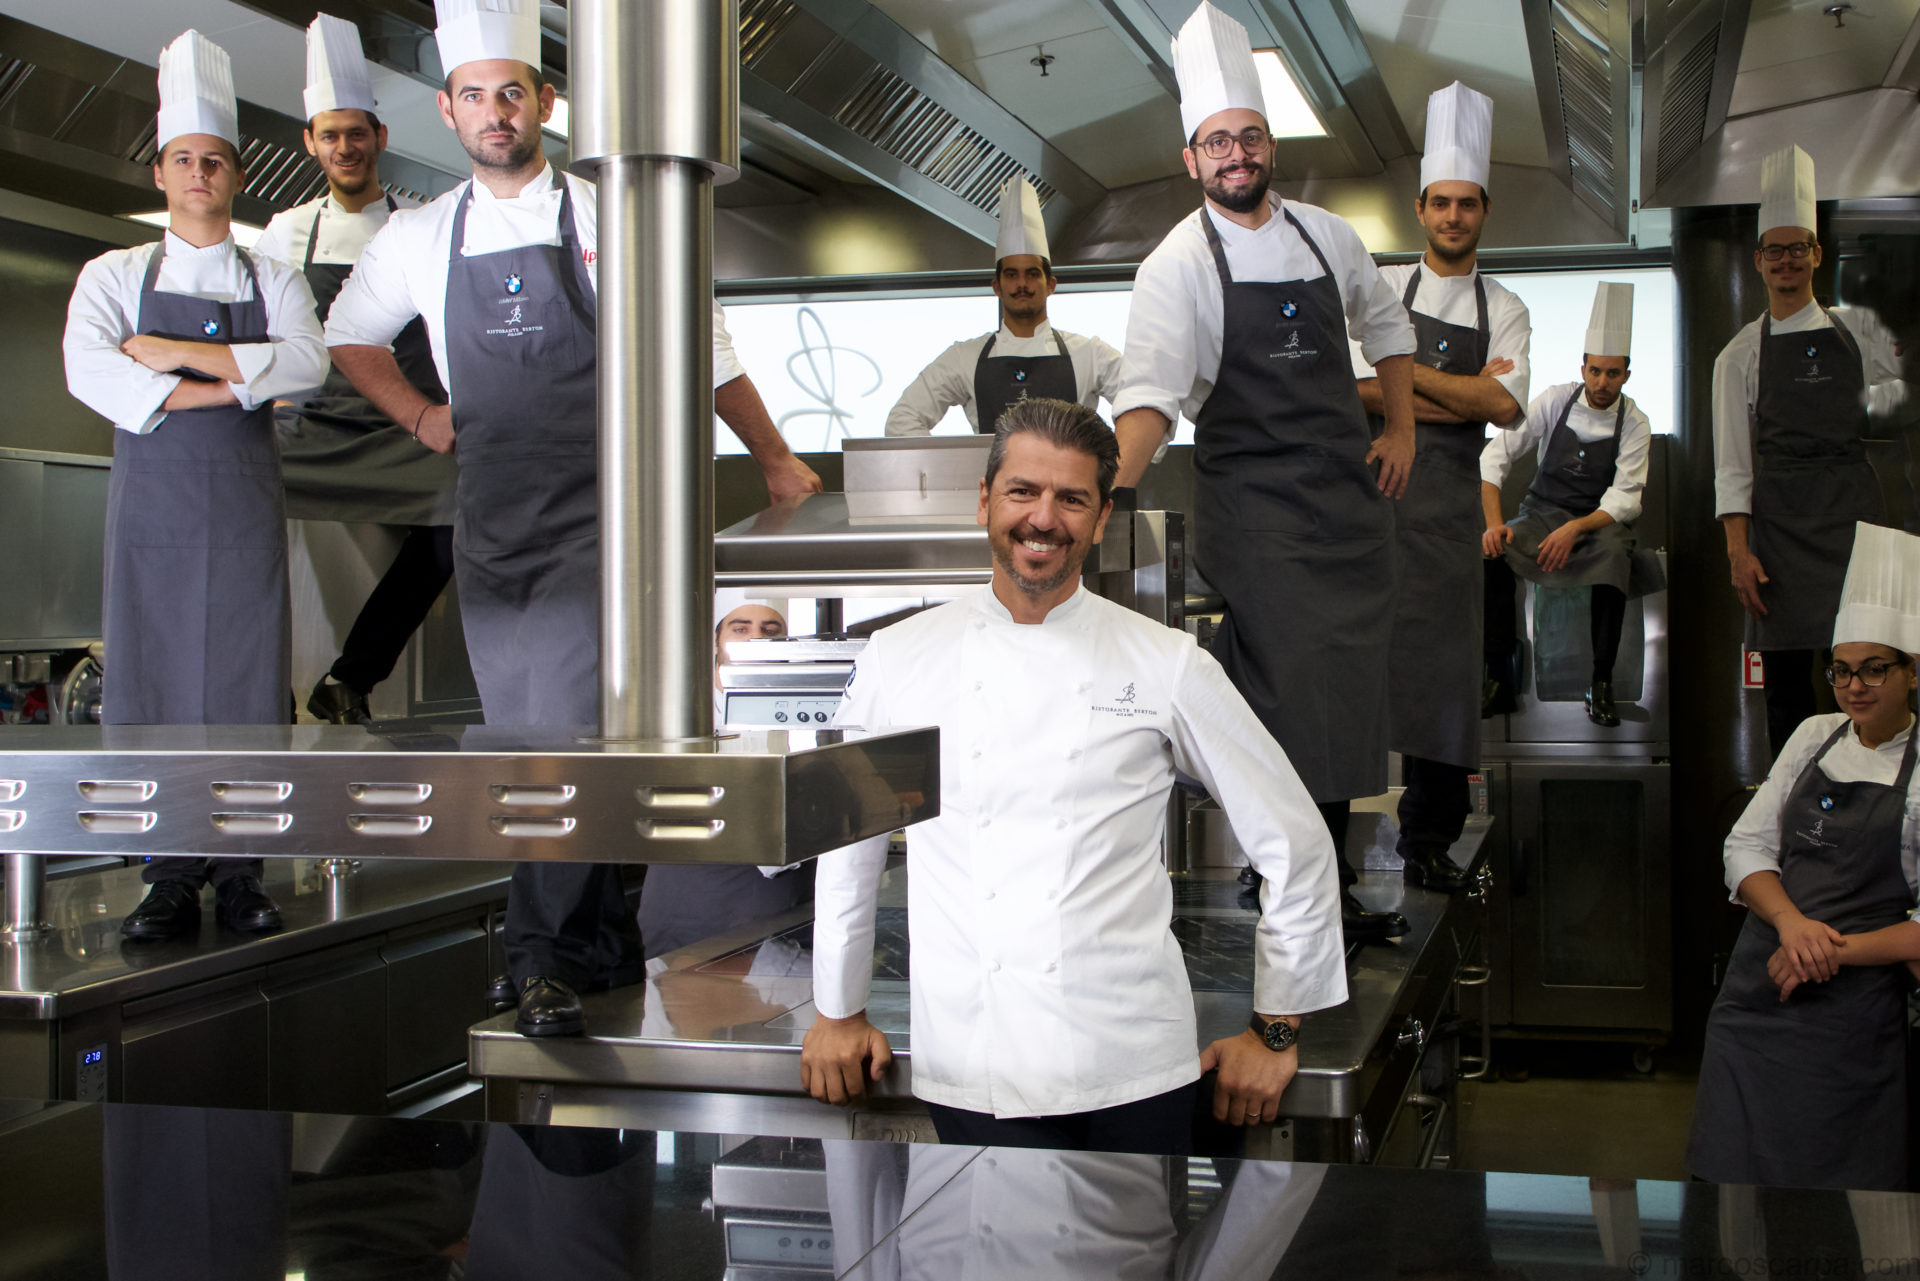 Tutti a scuola di cucina con lo chef stellato Andrea Berton!